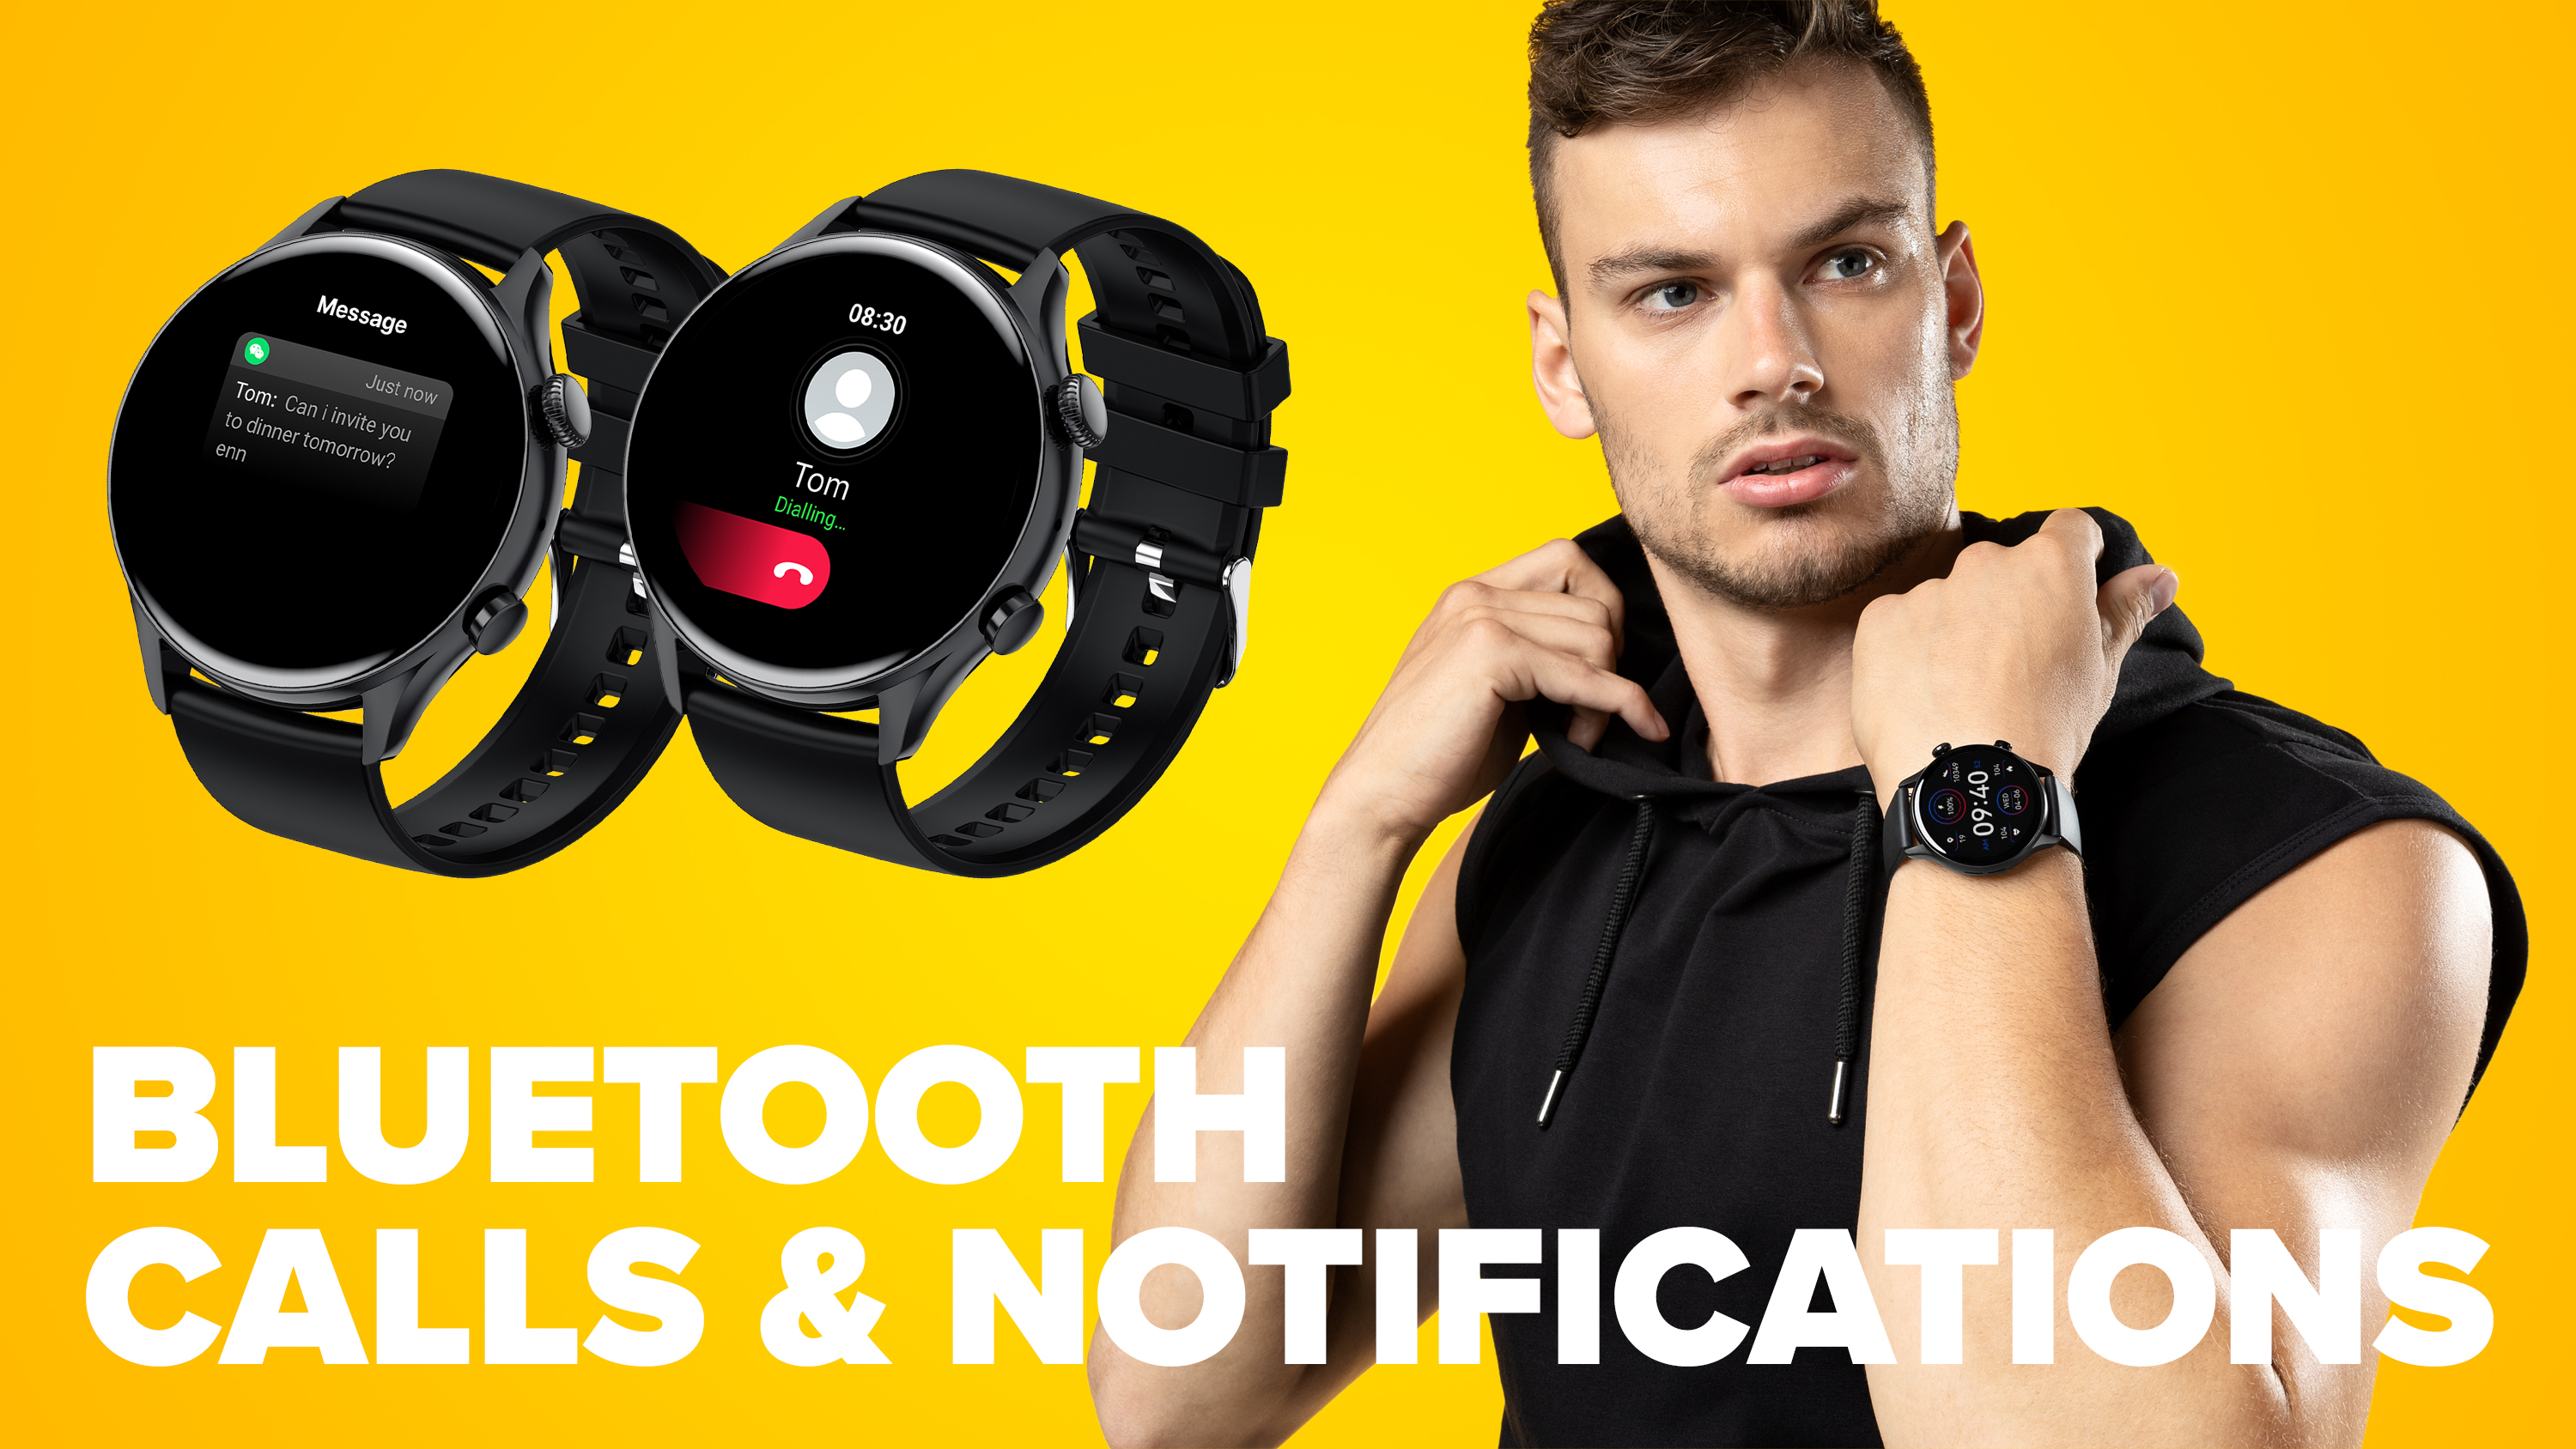 Chytré hodinky Niceboy WATCH GTR sú vybavené reproduktorom a mikrofónom na vybavovanie telefónnych hovorov priamo z vášho zápästia.